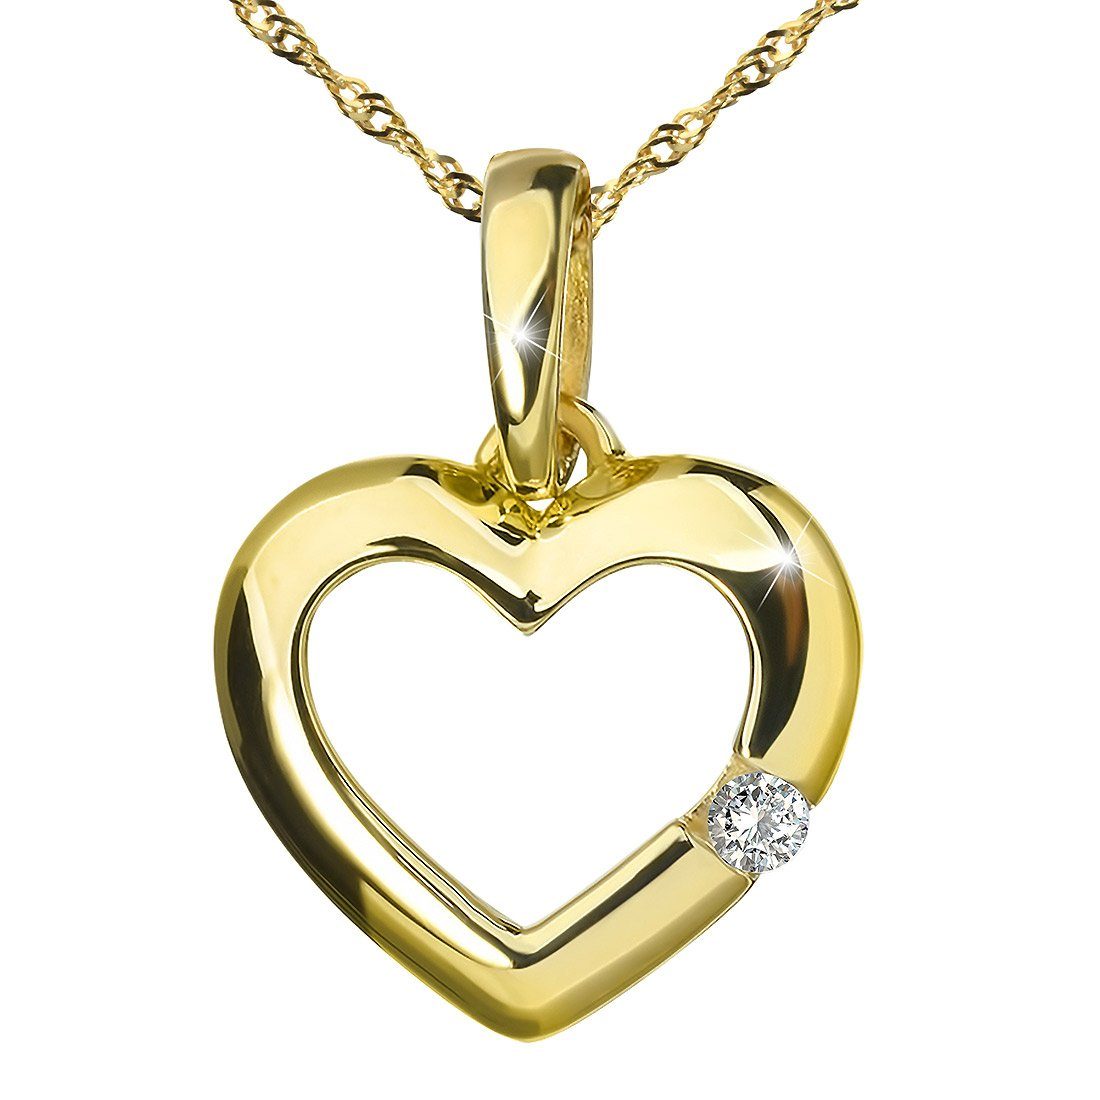 Materia Goldkette »Damen Gold Herz Zirkonia 42cm GKA-6«, 375 Gelbgold, 9  Karat online kaufen | OTTO